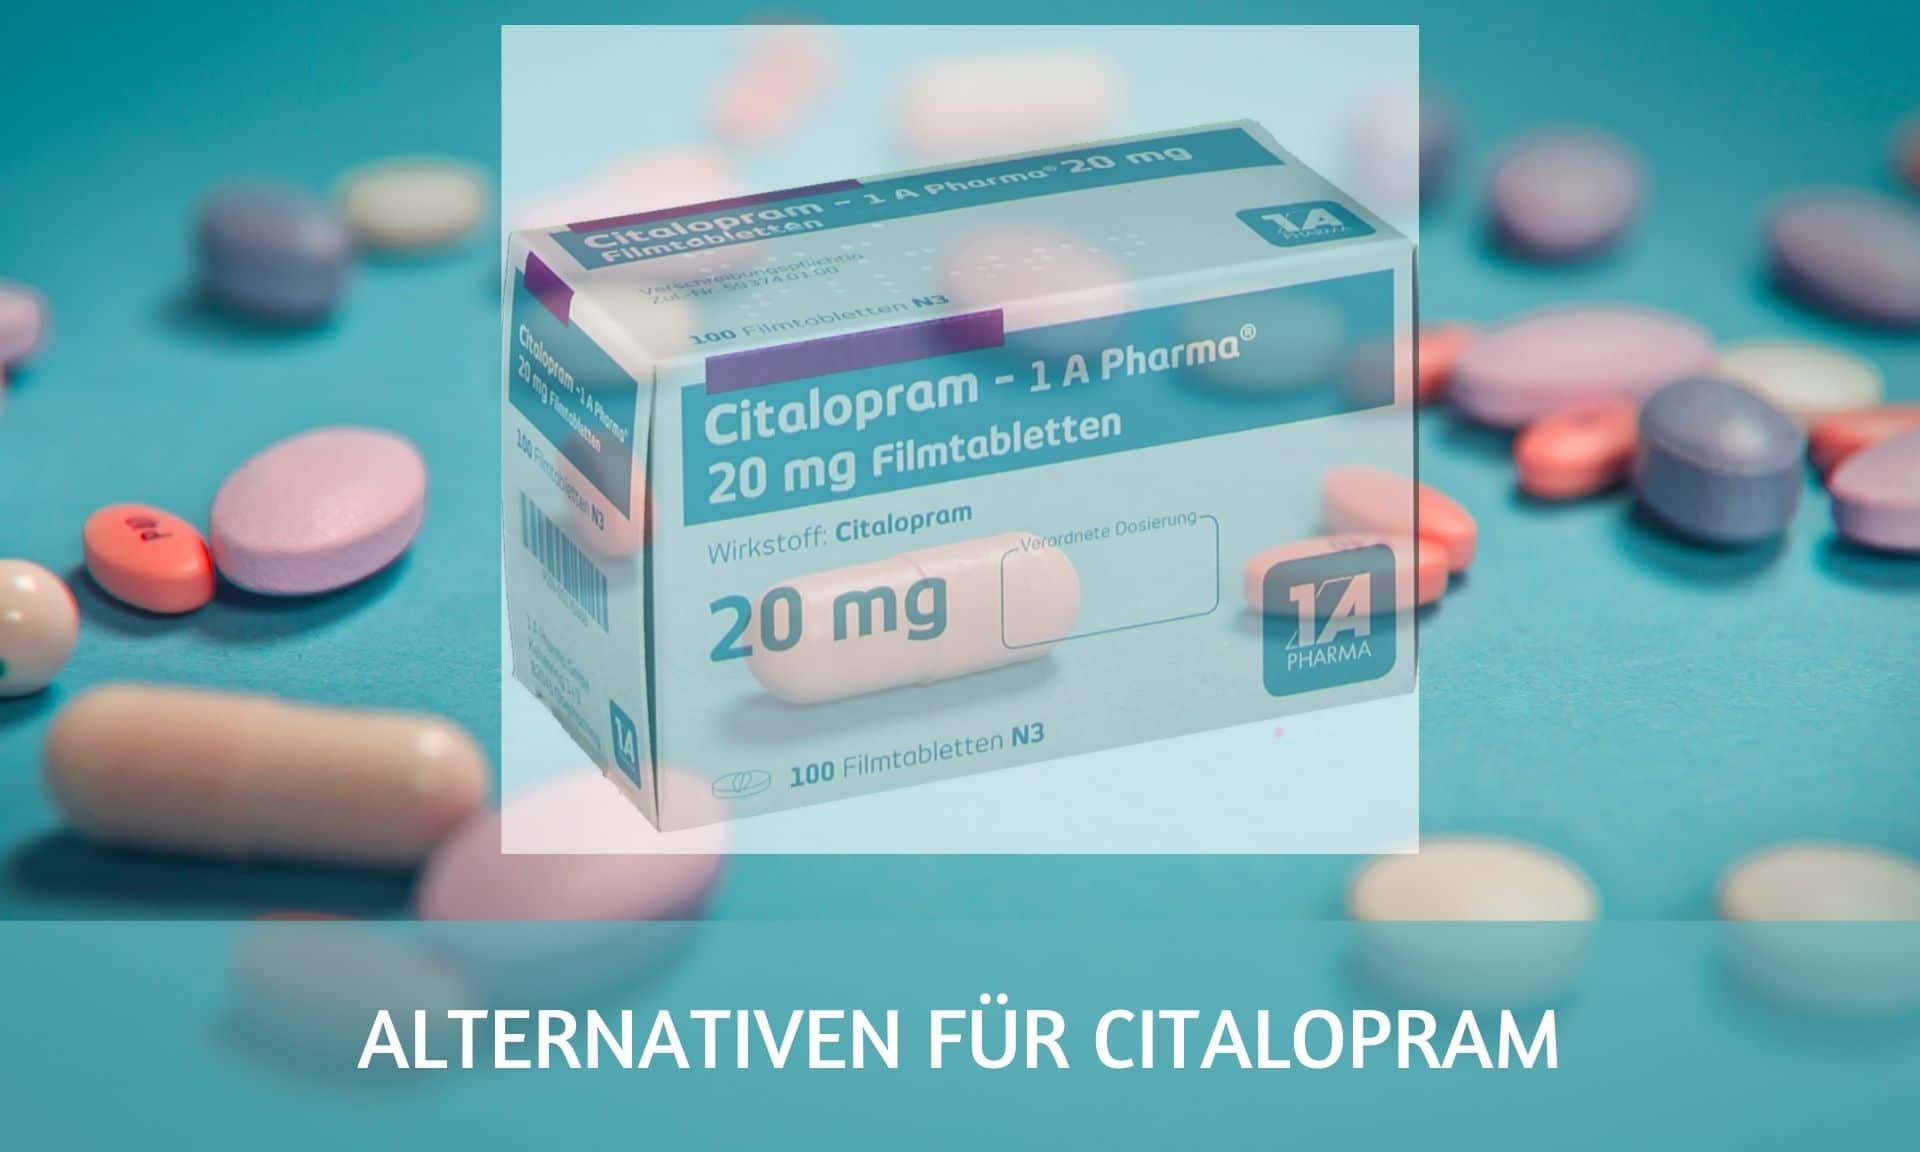 Alternativen für Citalopram: das könnte dir auch helfen